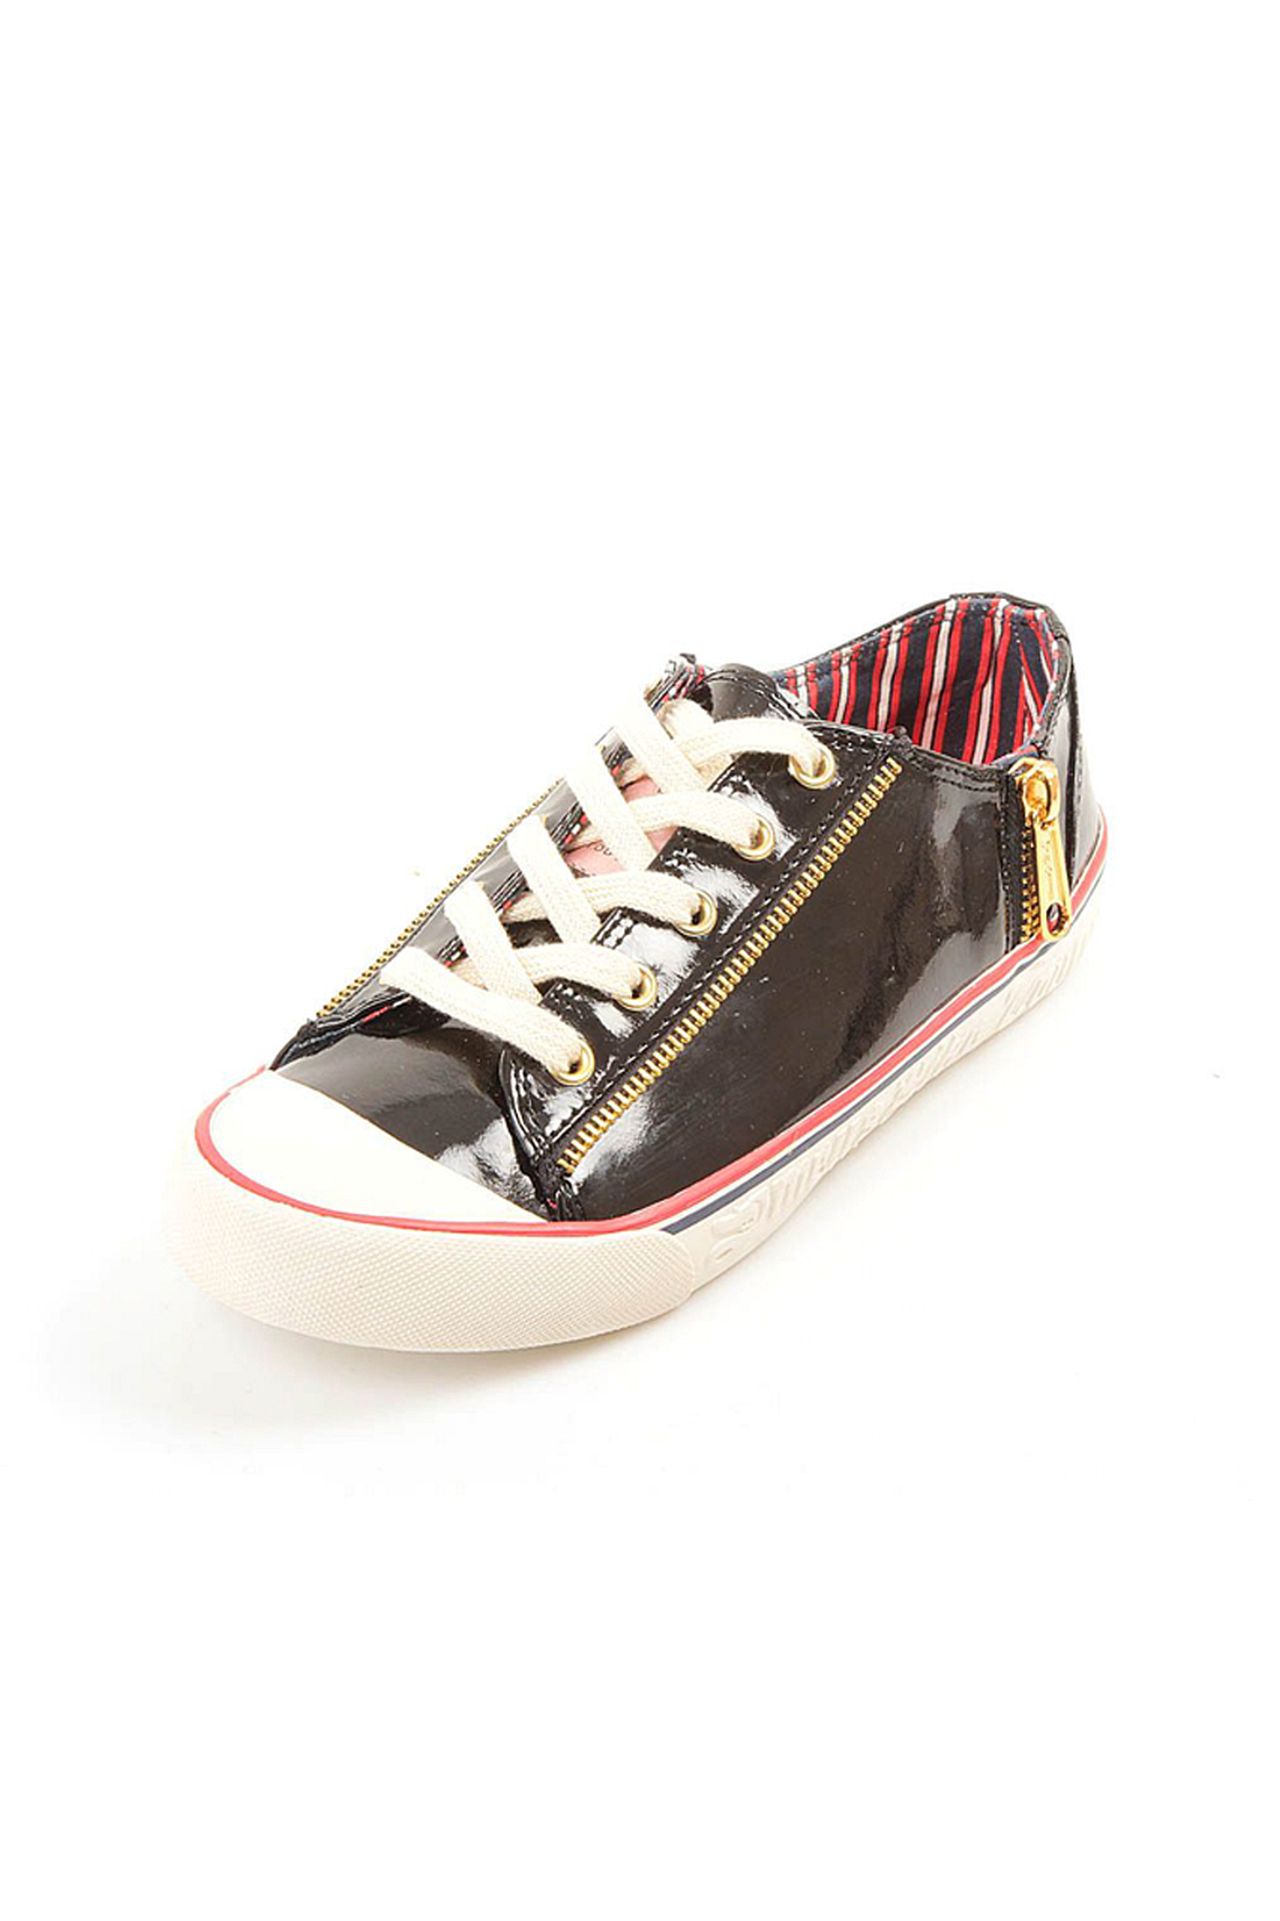 Обувь женская Кроссовки JUICY COUTURE (J362309/29). Купить за 4950 руб.